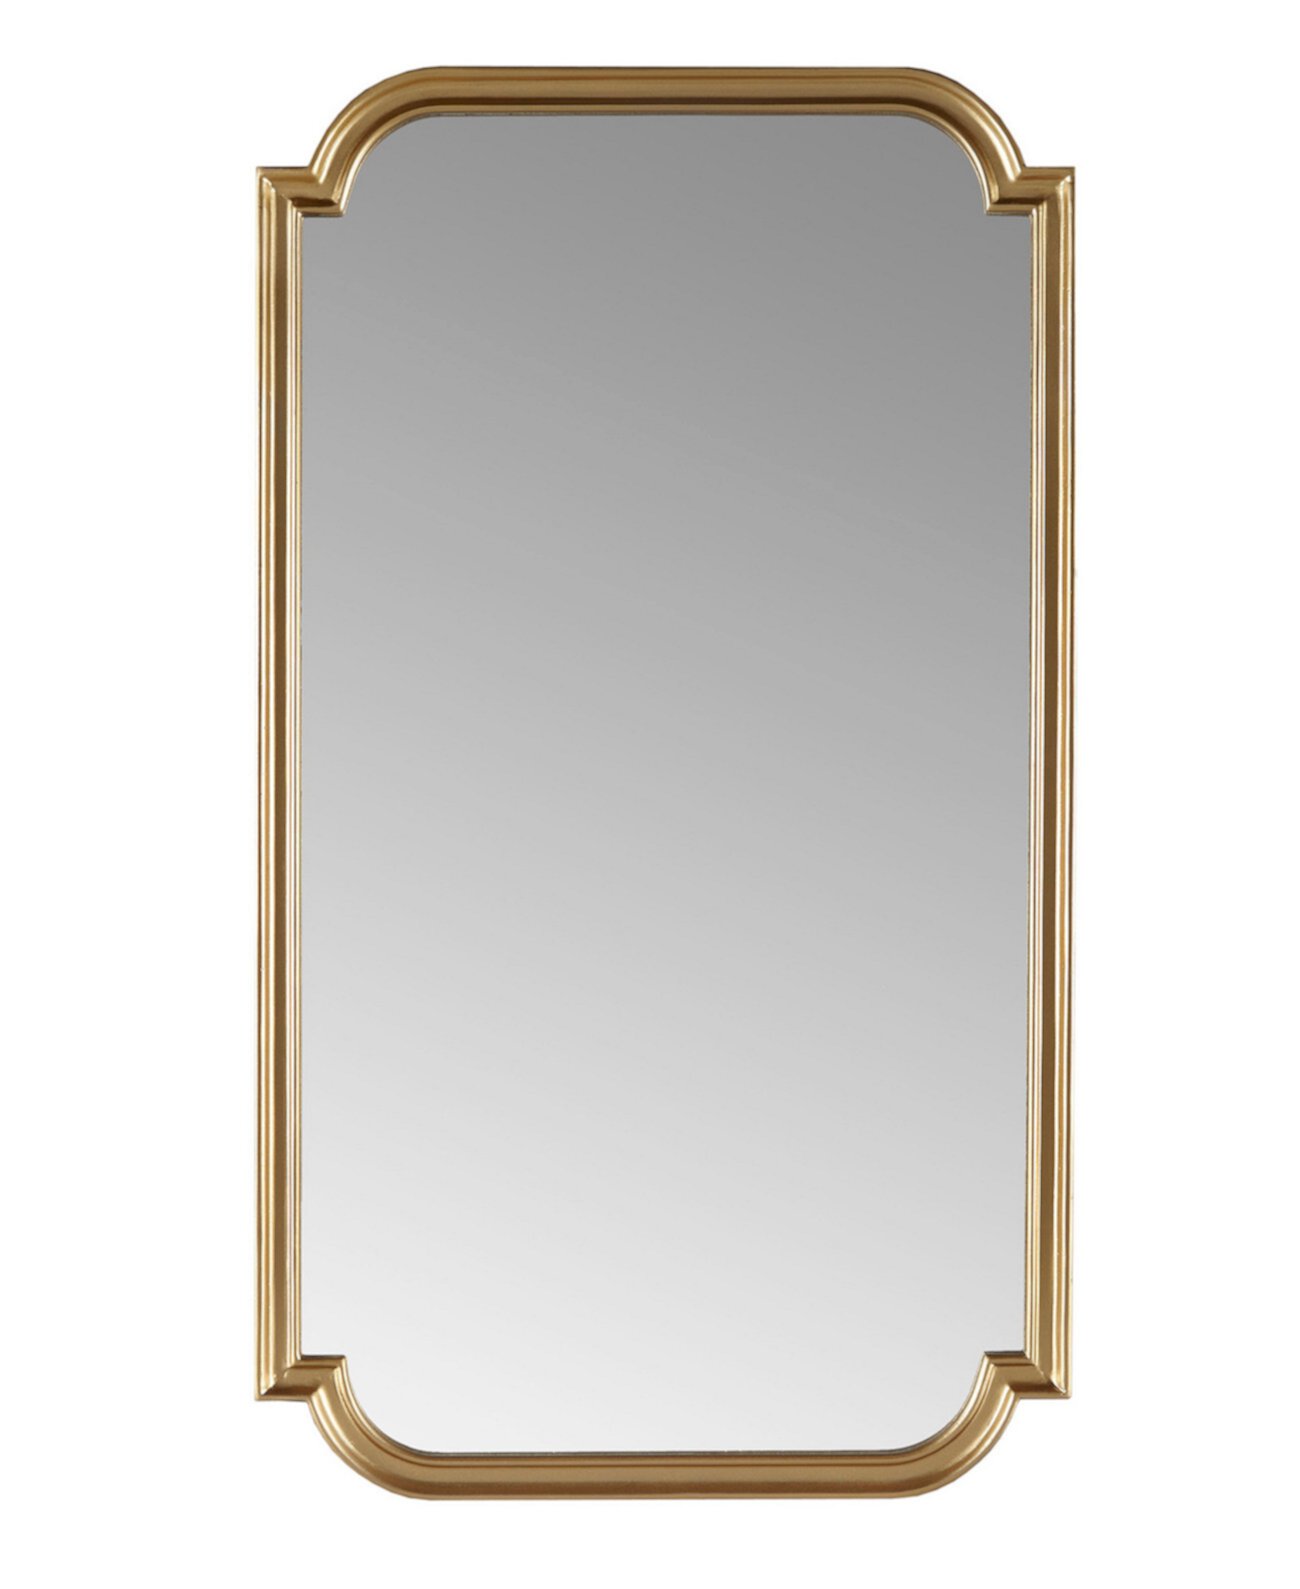 Настенное зеркало Adelaide из золотистого дерева с зубчатым краем Madison Park